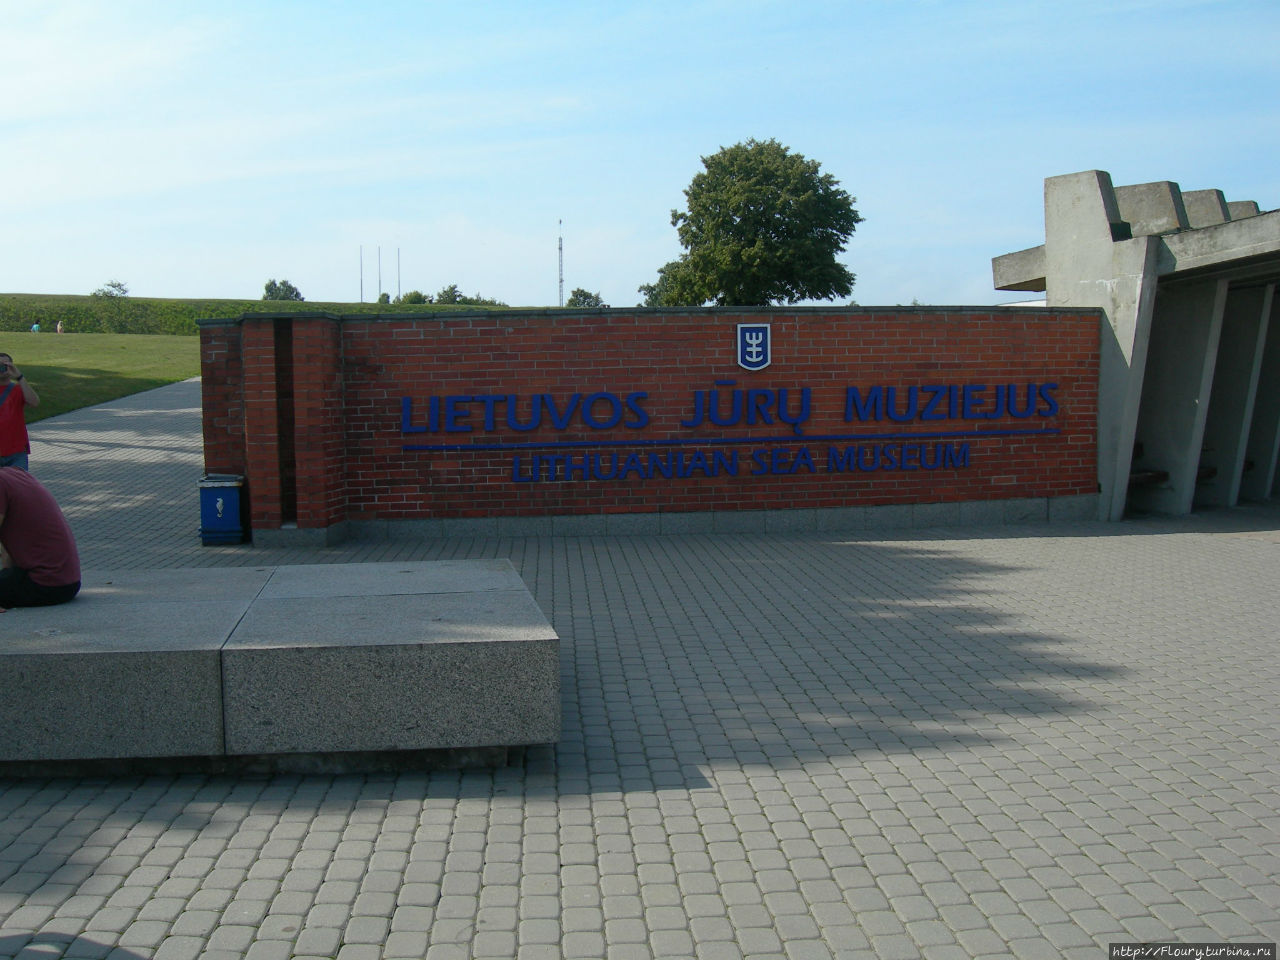 Музей, где Нептун открывает свои секркты Клайпеда, Литва